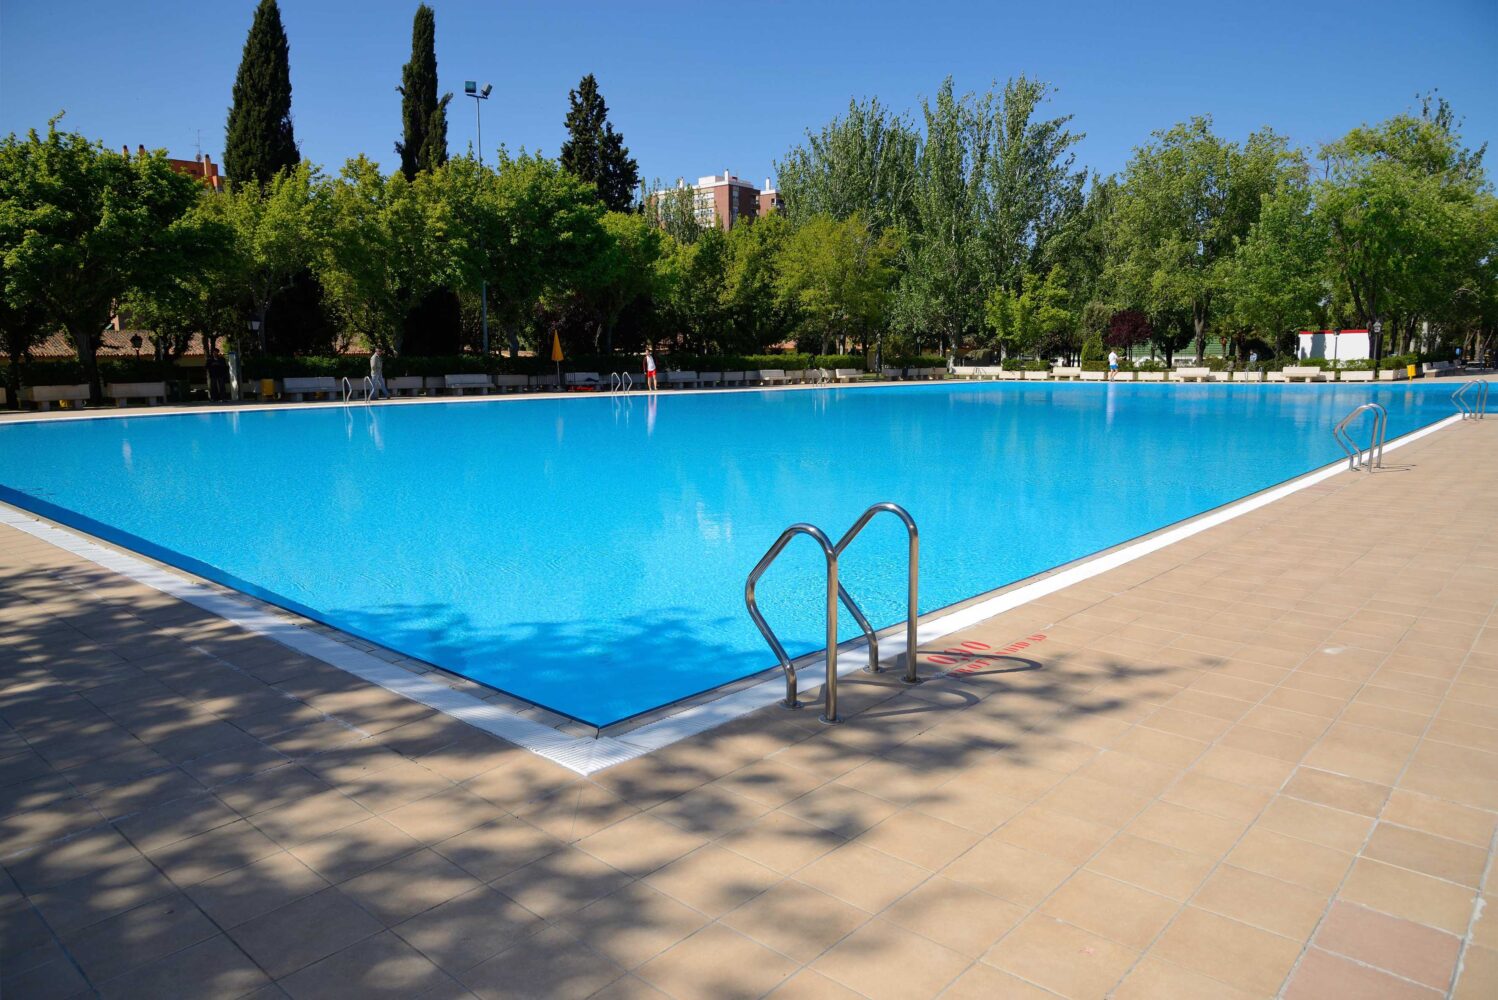 linda llegar invención Las piscinas públicas de Madrid abren por turnos este verano - Zona Retiro -